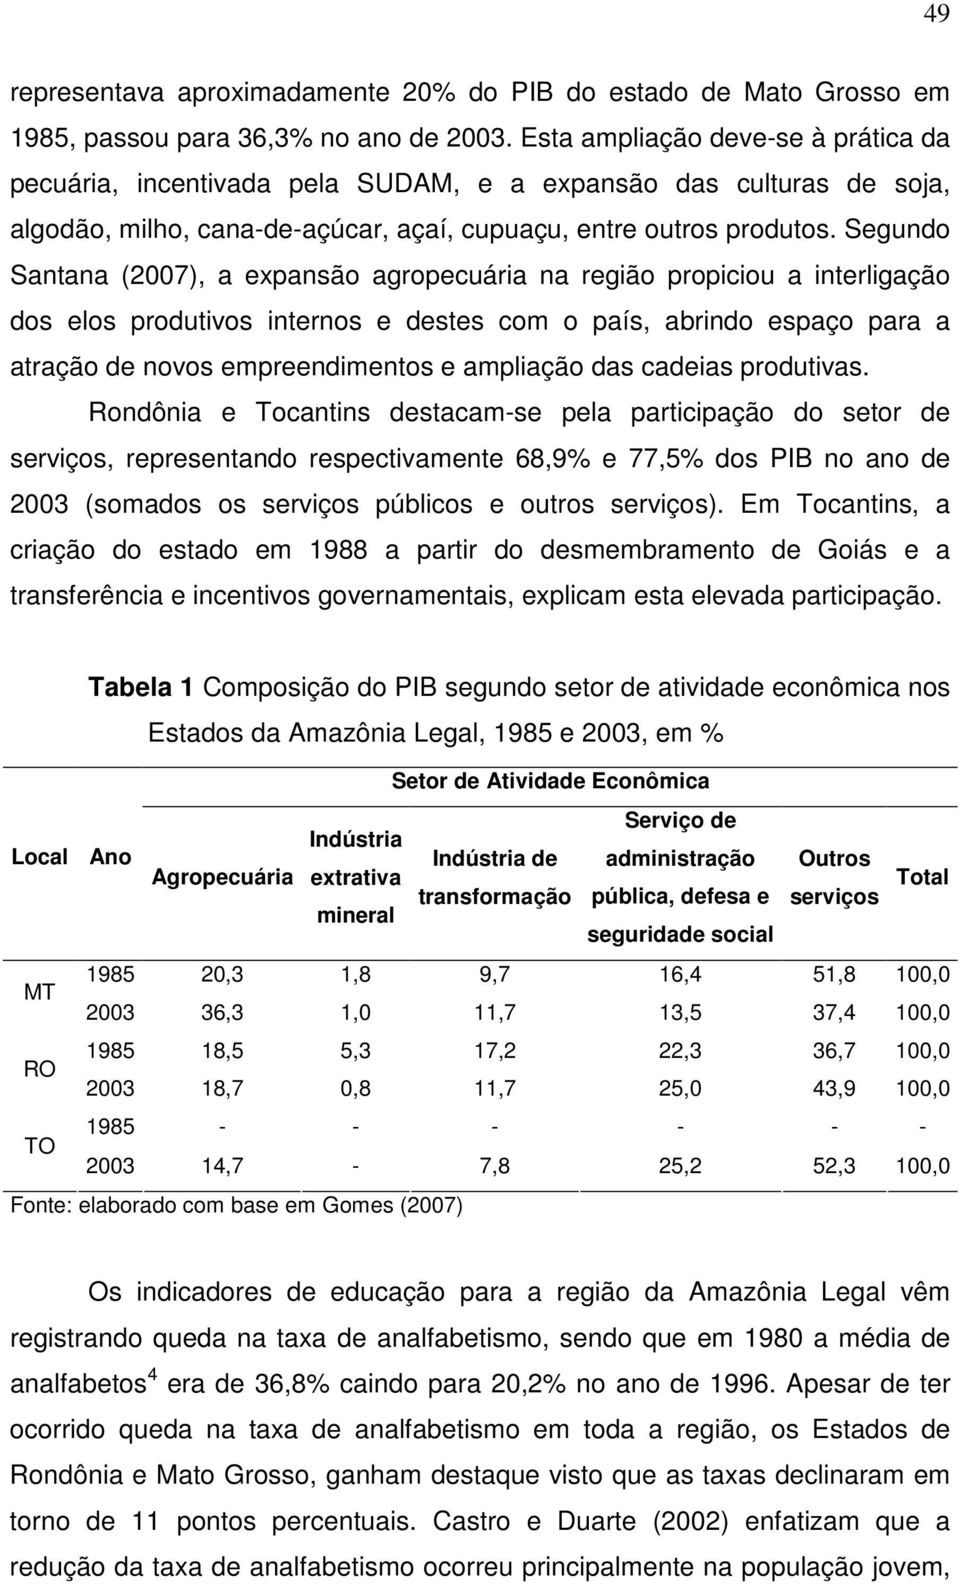 Segundo Santana (2007), a expansão agropecuária na região propiciou a interligação dos elos produtivos internos e destes com o país, abrindo espaço para a atração de novos empreendimentos e ampliação